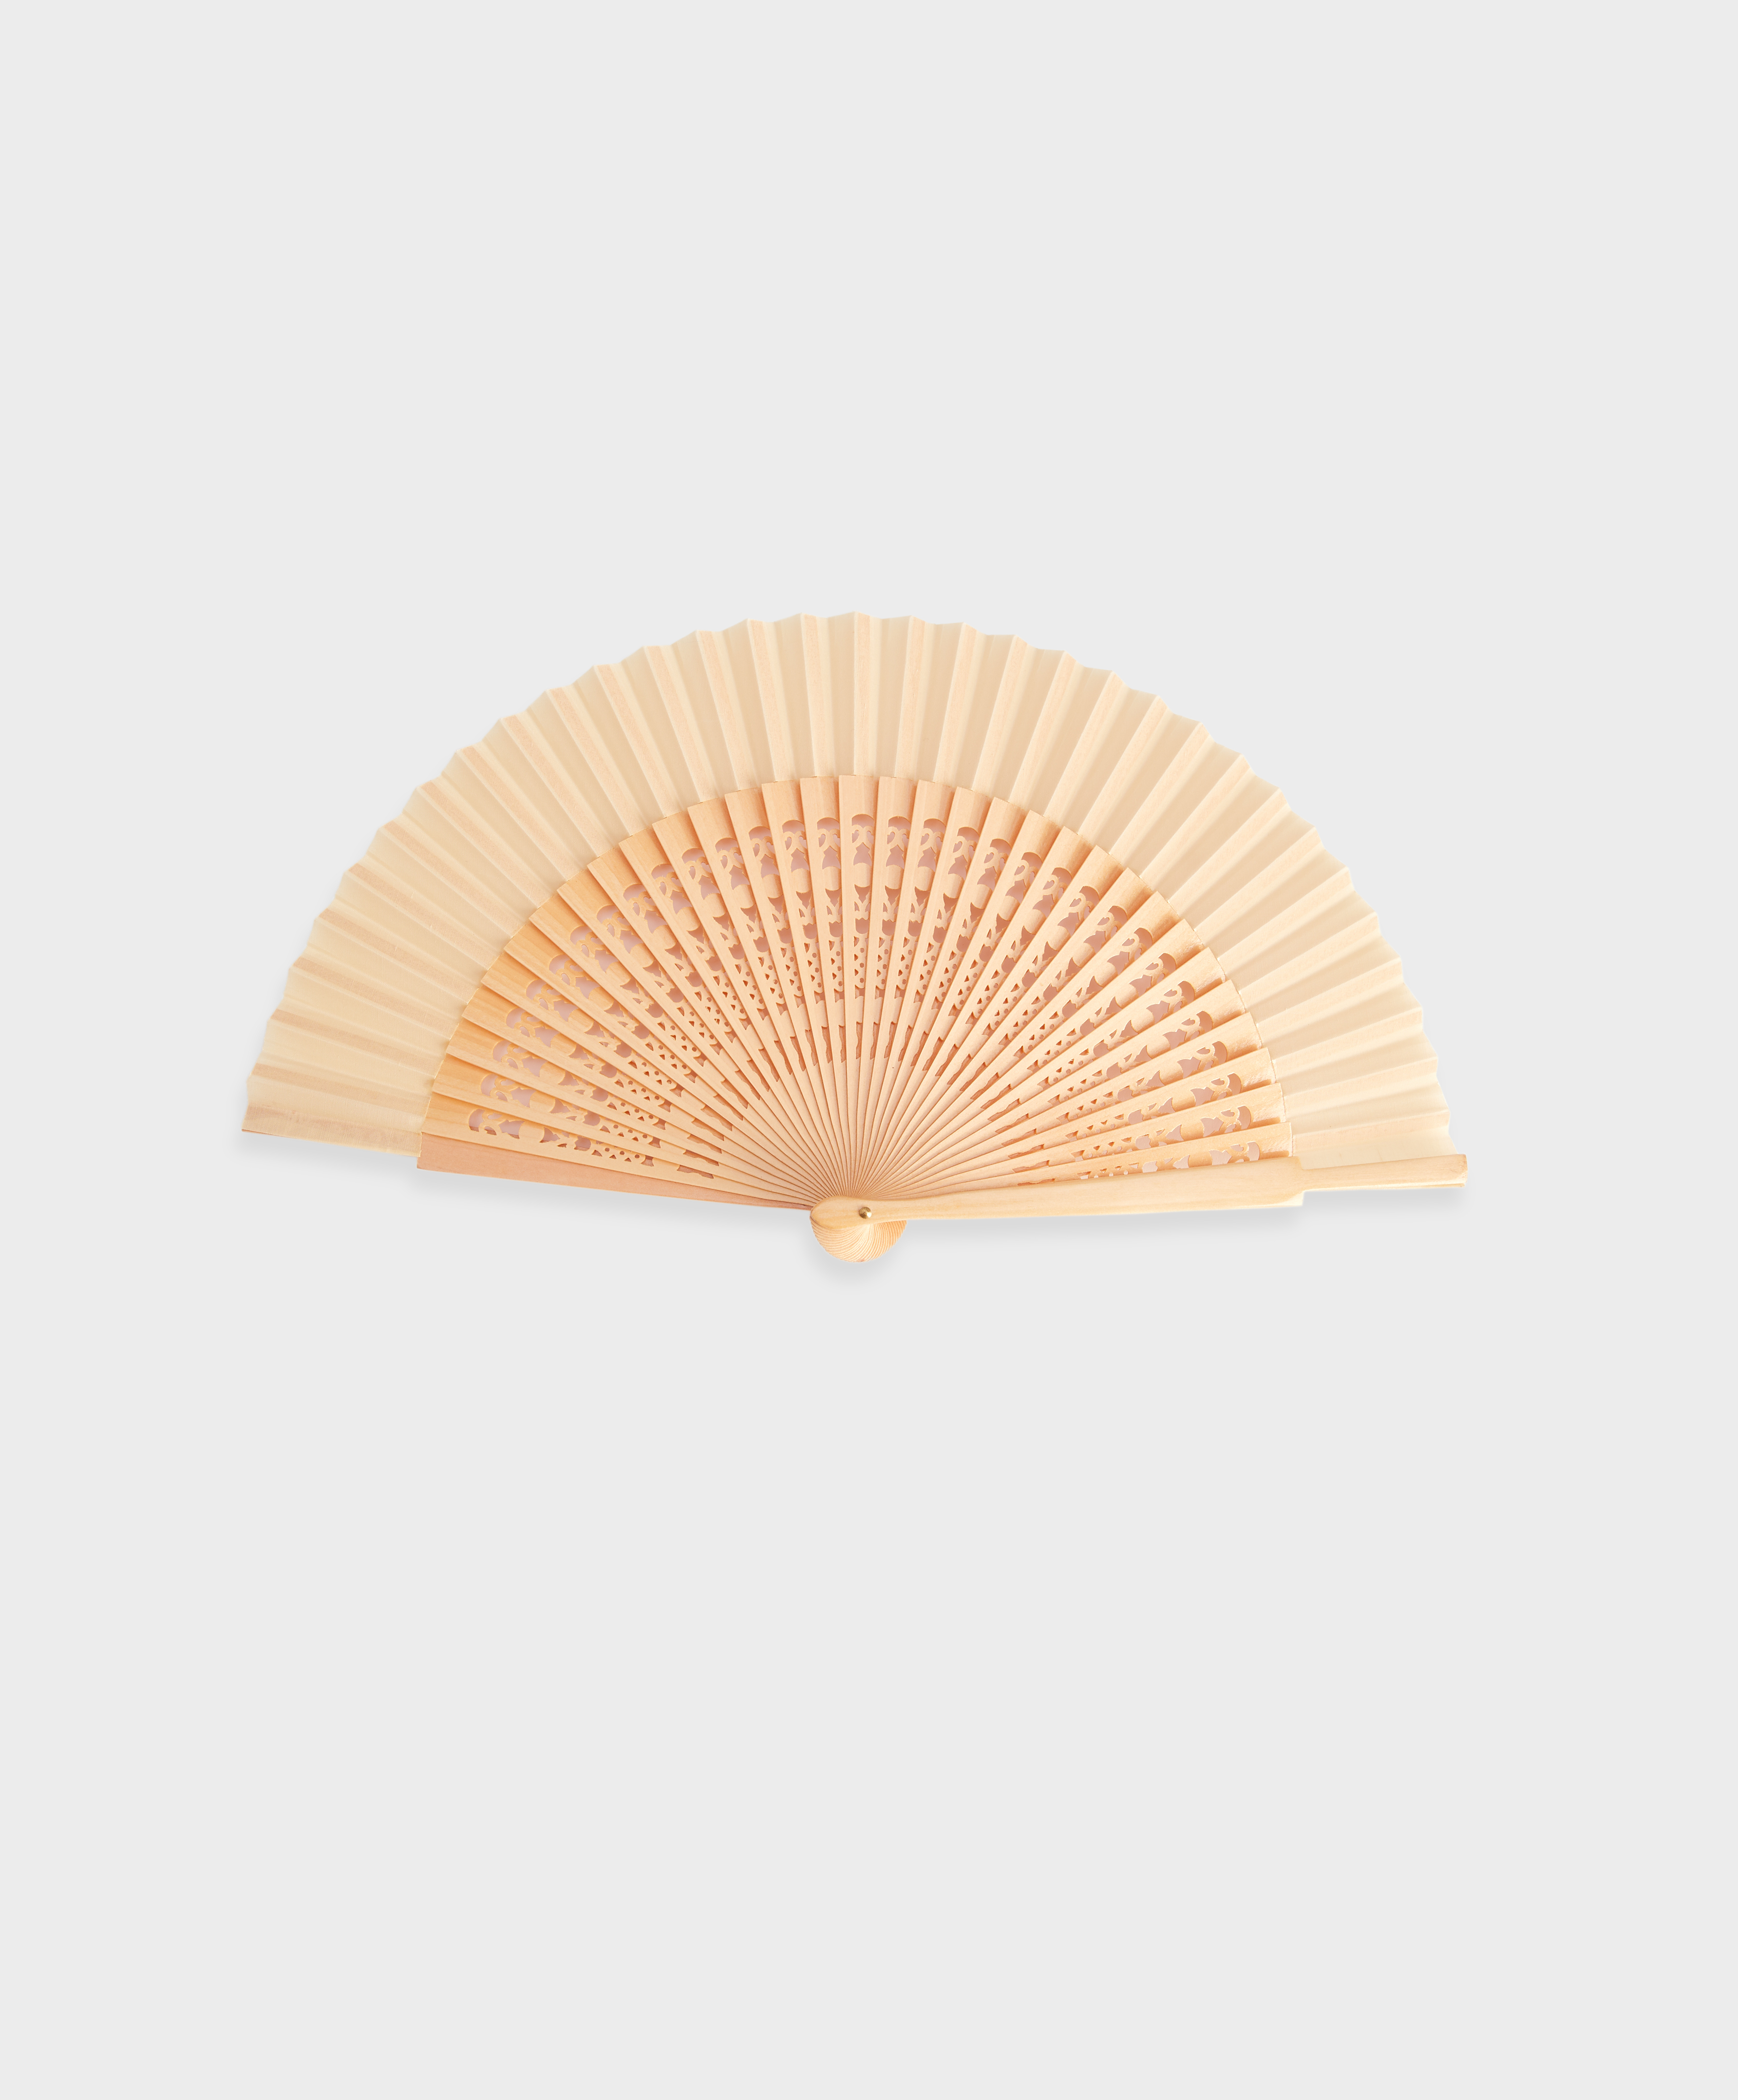 Cutwork wooden fan